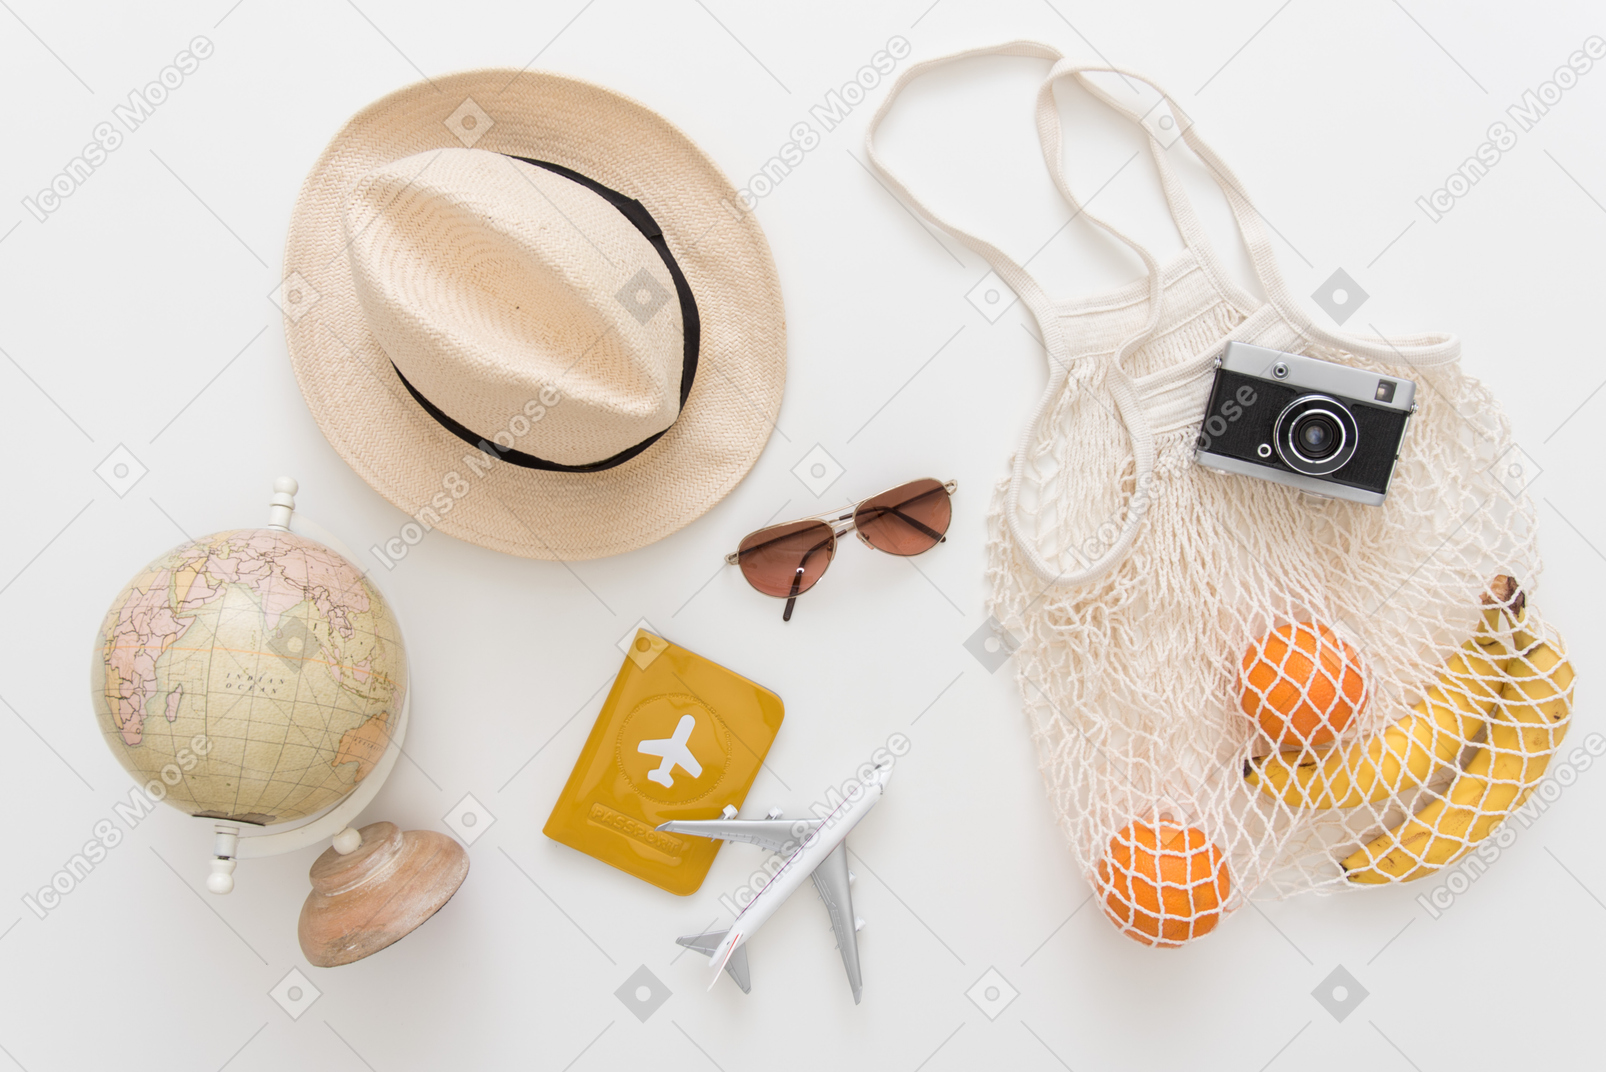 Tutti gli elementi impostati e pronti per le vacanze estive